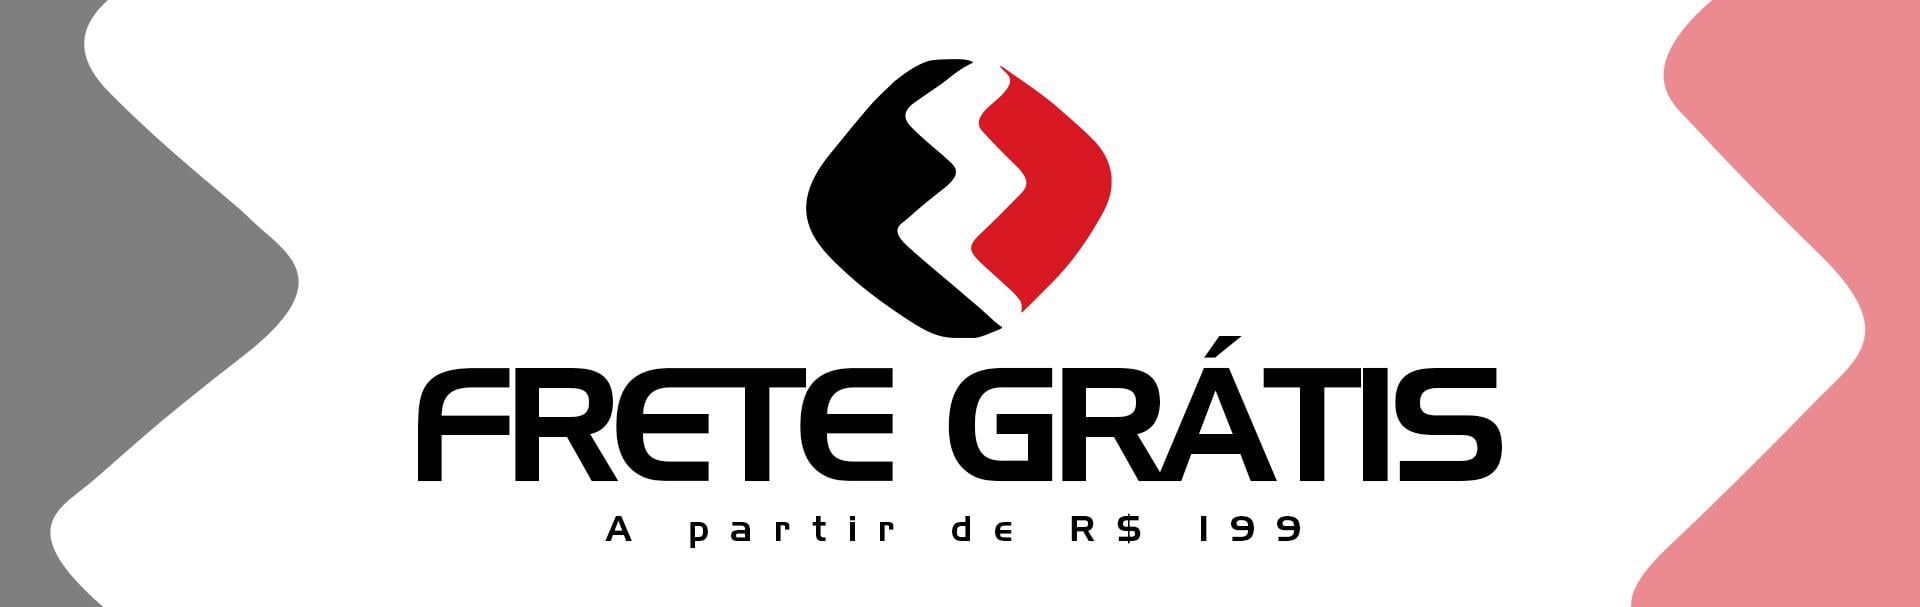 Frete Grátis (Logo estação)